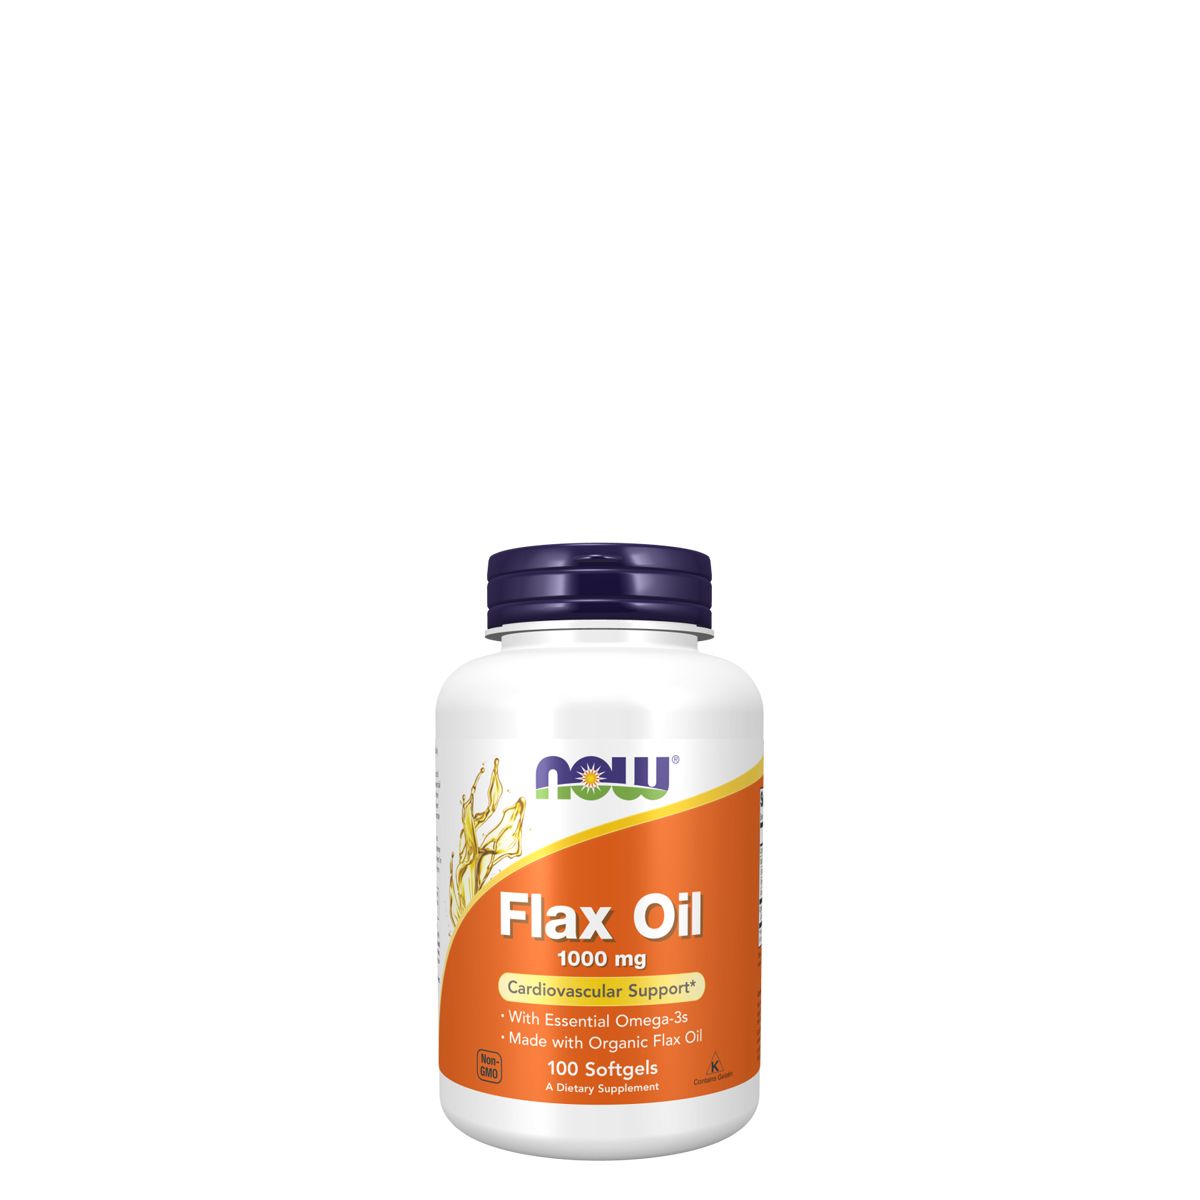 Lenmag olaj bio lenmagból 1000 mg, Now Flax Oil, 100 kapszula